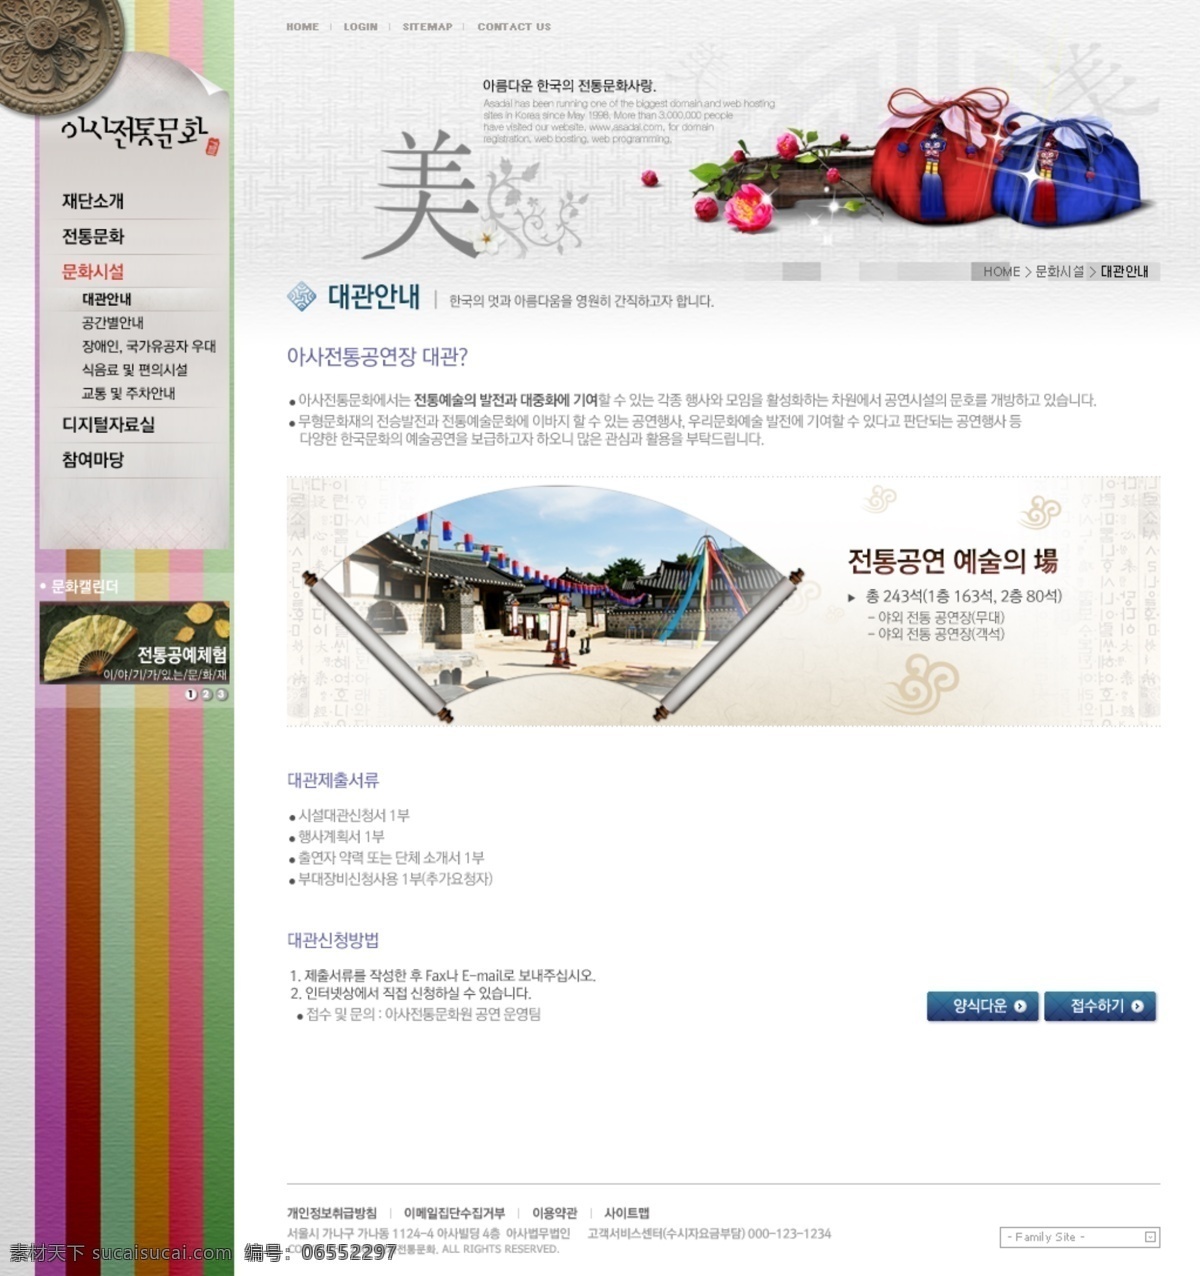 古典 水墨 风格 网页素材 版式设计 韩国模板 墨痕 墨迹 网页版式 网页布局 网页设计 网页模板